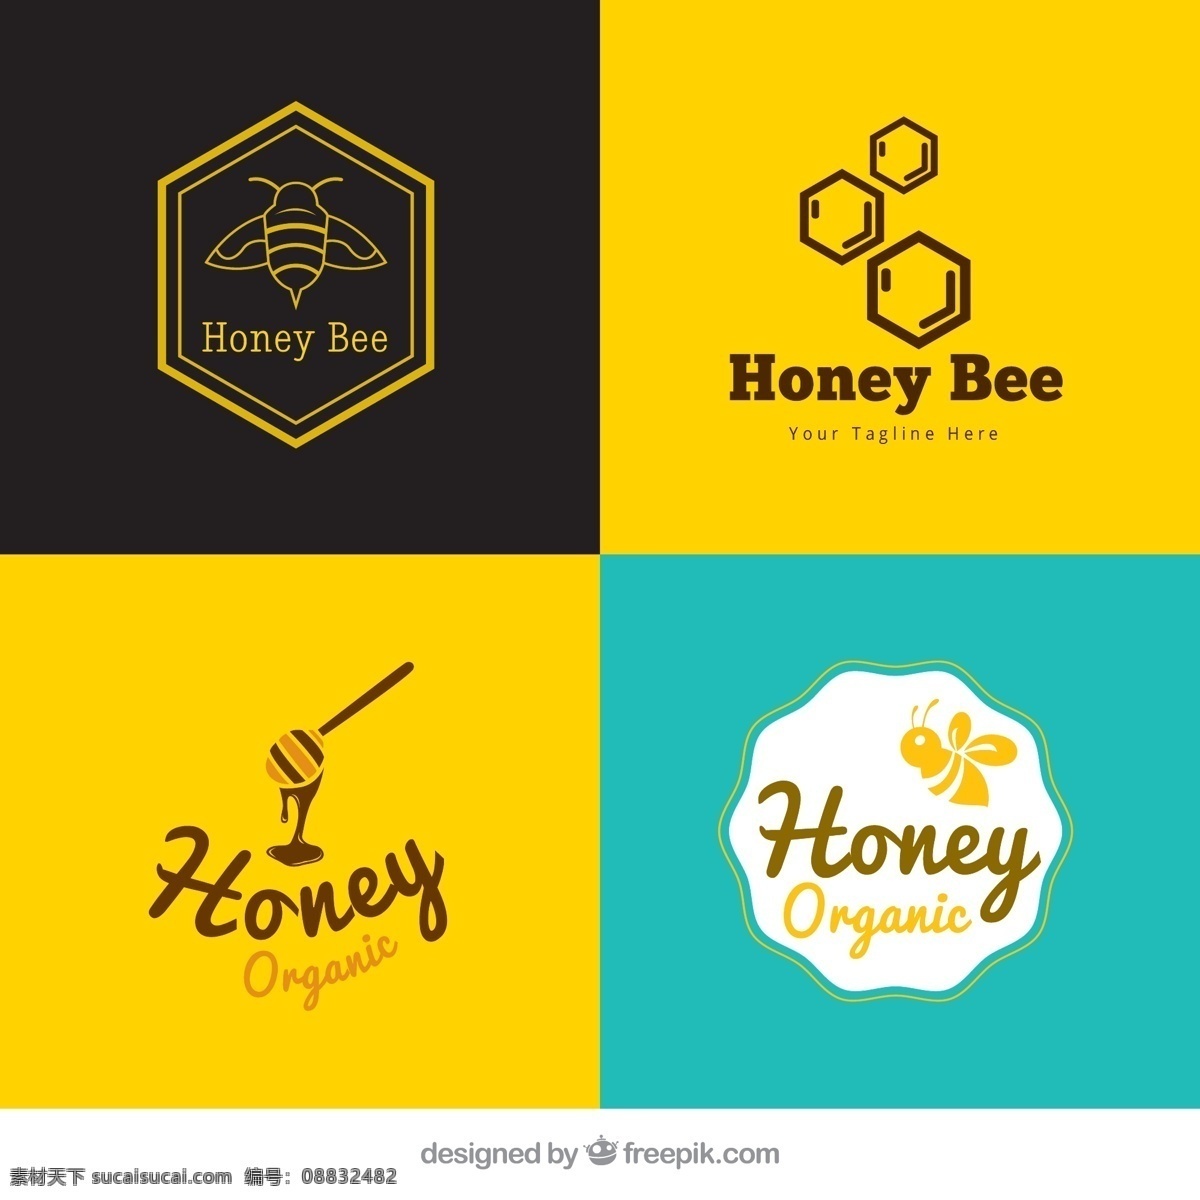 可爱 宝贝 标志 包装 商业 自然 动物 标签 蜜蜂 蜂蜜 企业 有机的 甜蜜的 公司 品牌 贴纸 企业身份 装饰 象征 身份